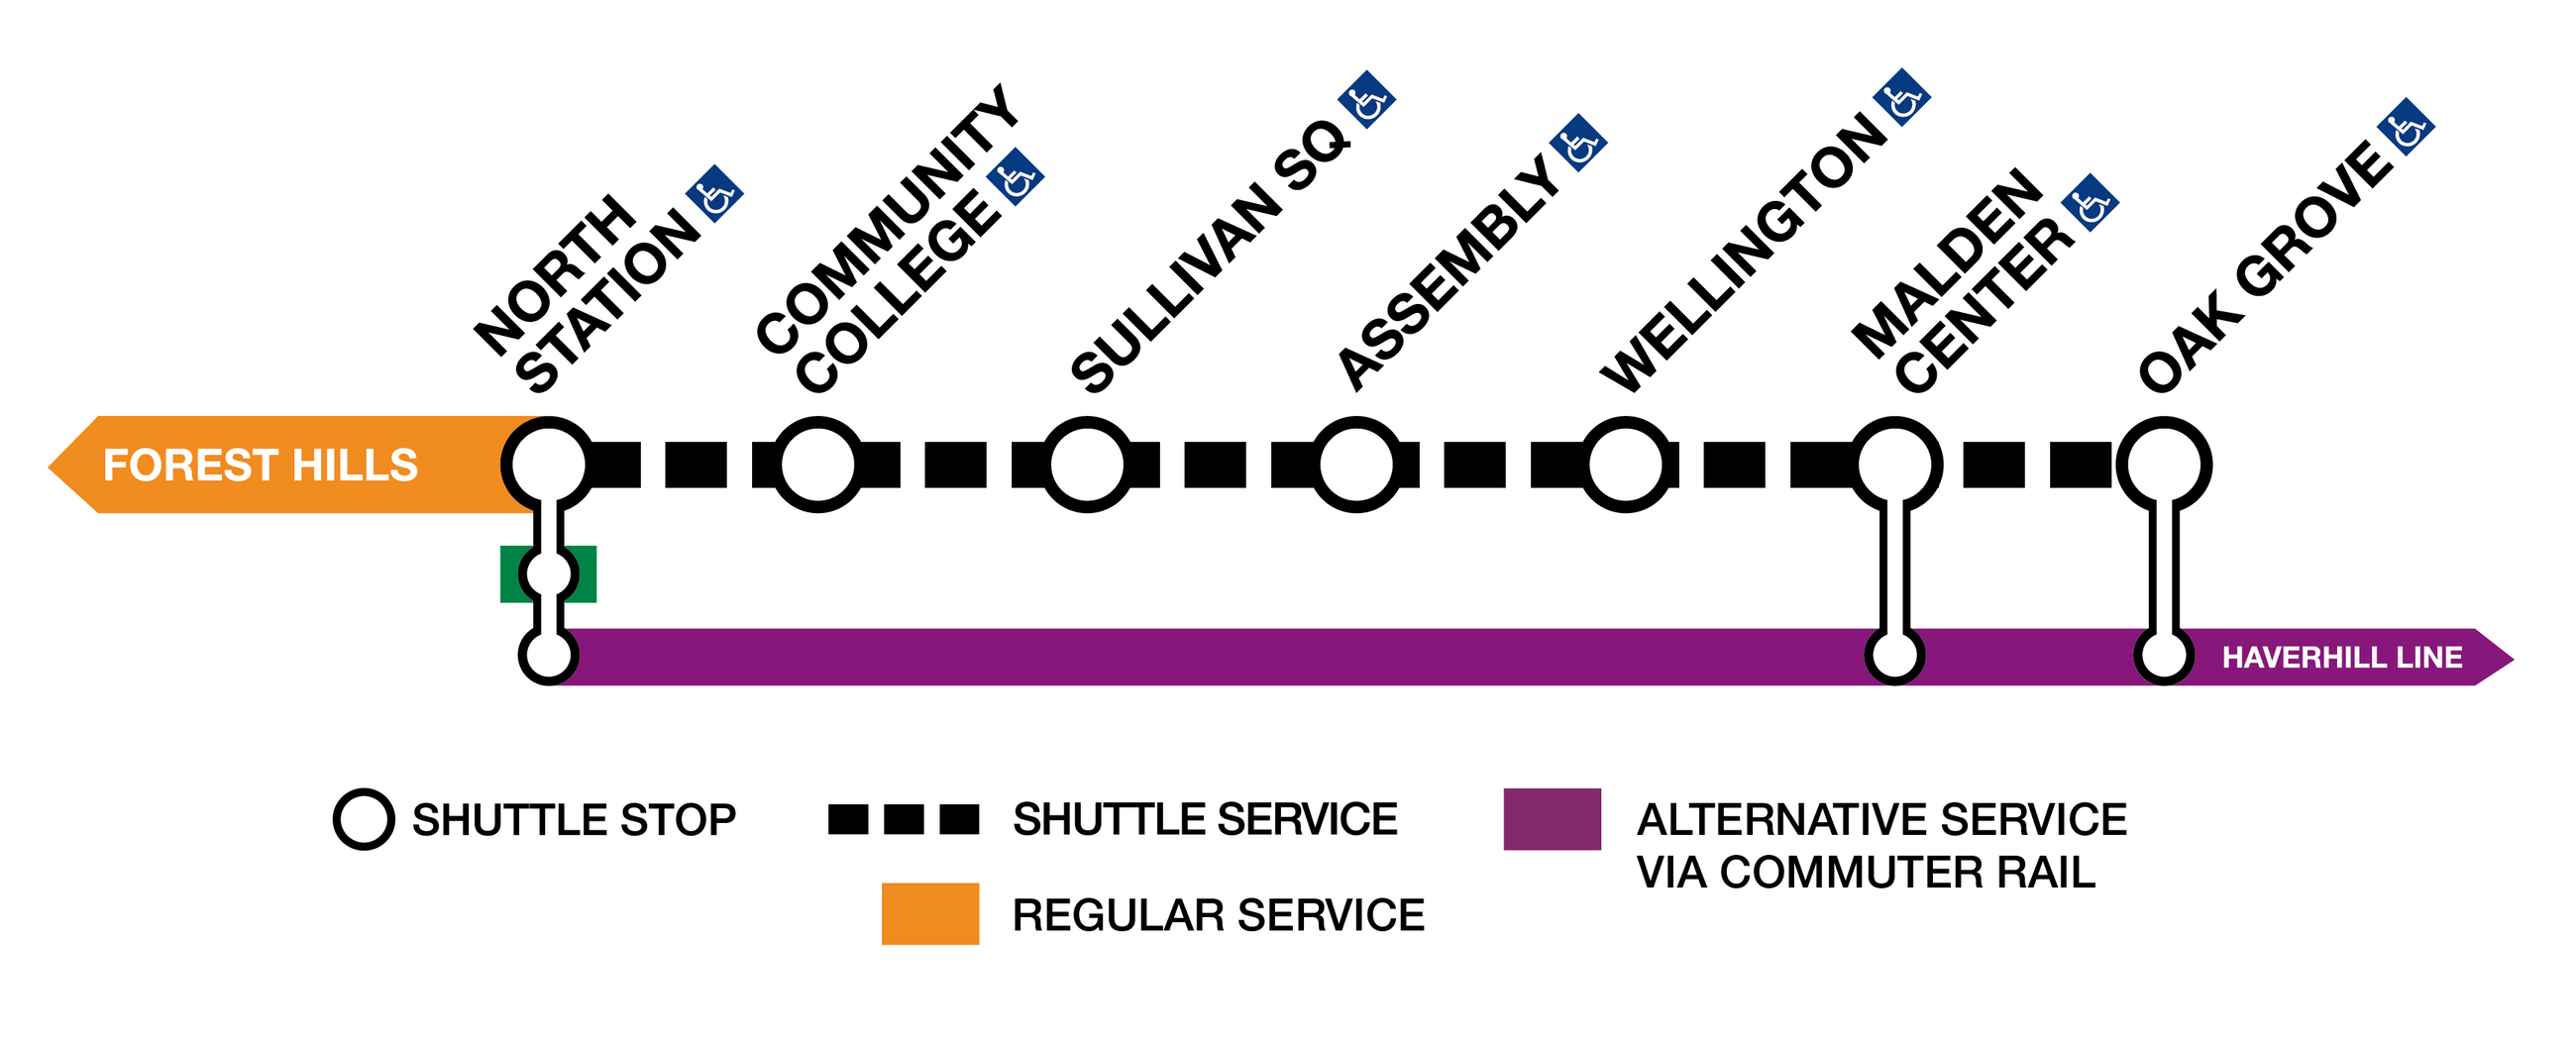 Shuttle service graphic for the Orange Line closure